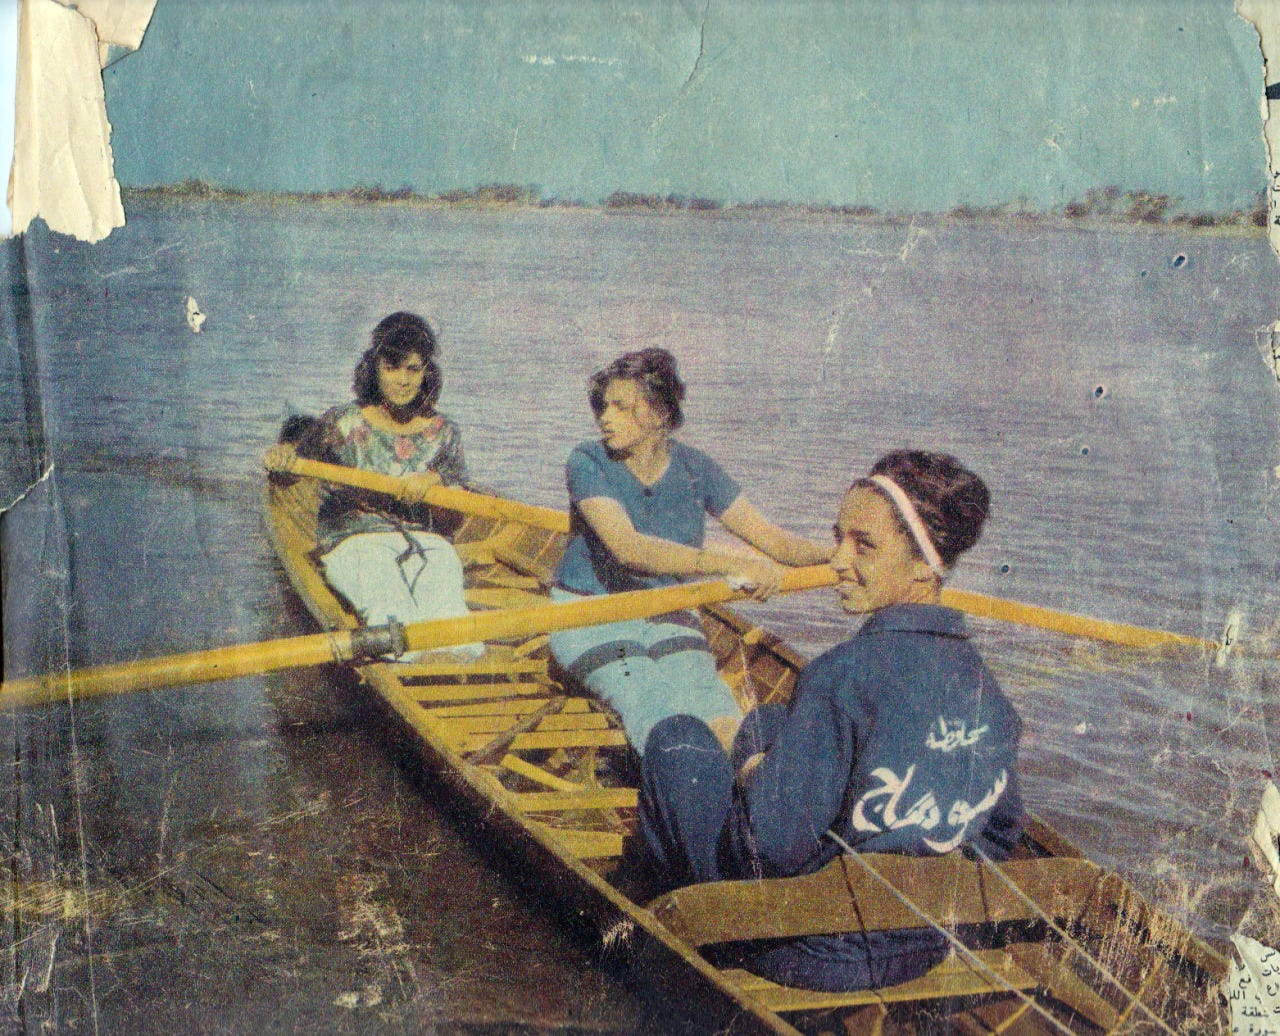 boating in Sohag, 1960.